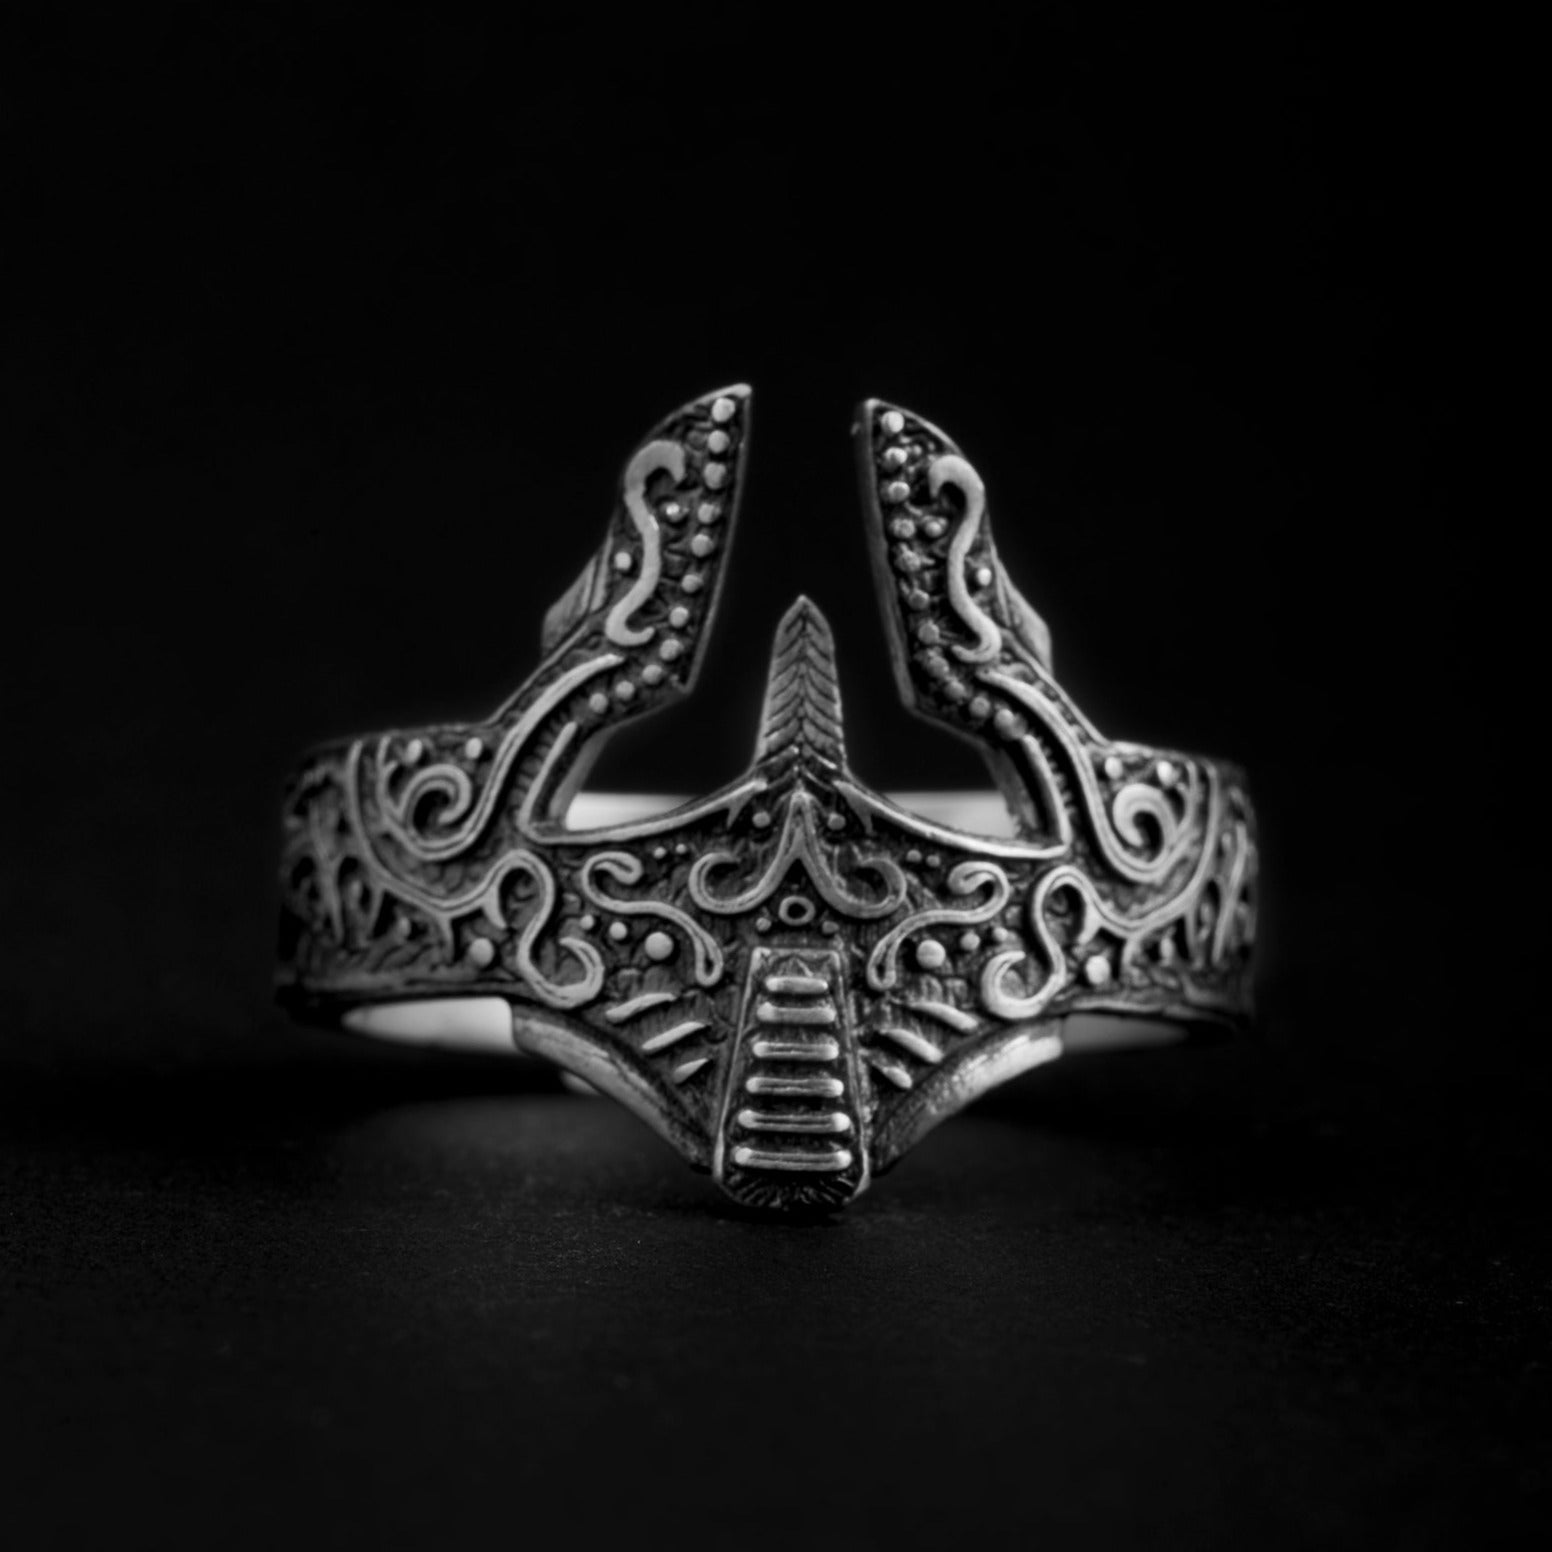 sterling silver Spartan Helmet Ring, spartan warrior, helmet, warrior ring, loyalty, heroism, bravery and power